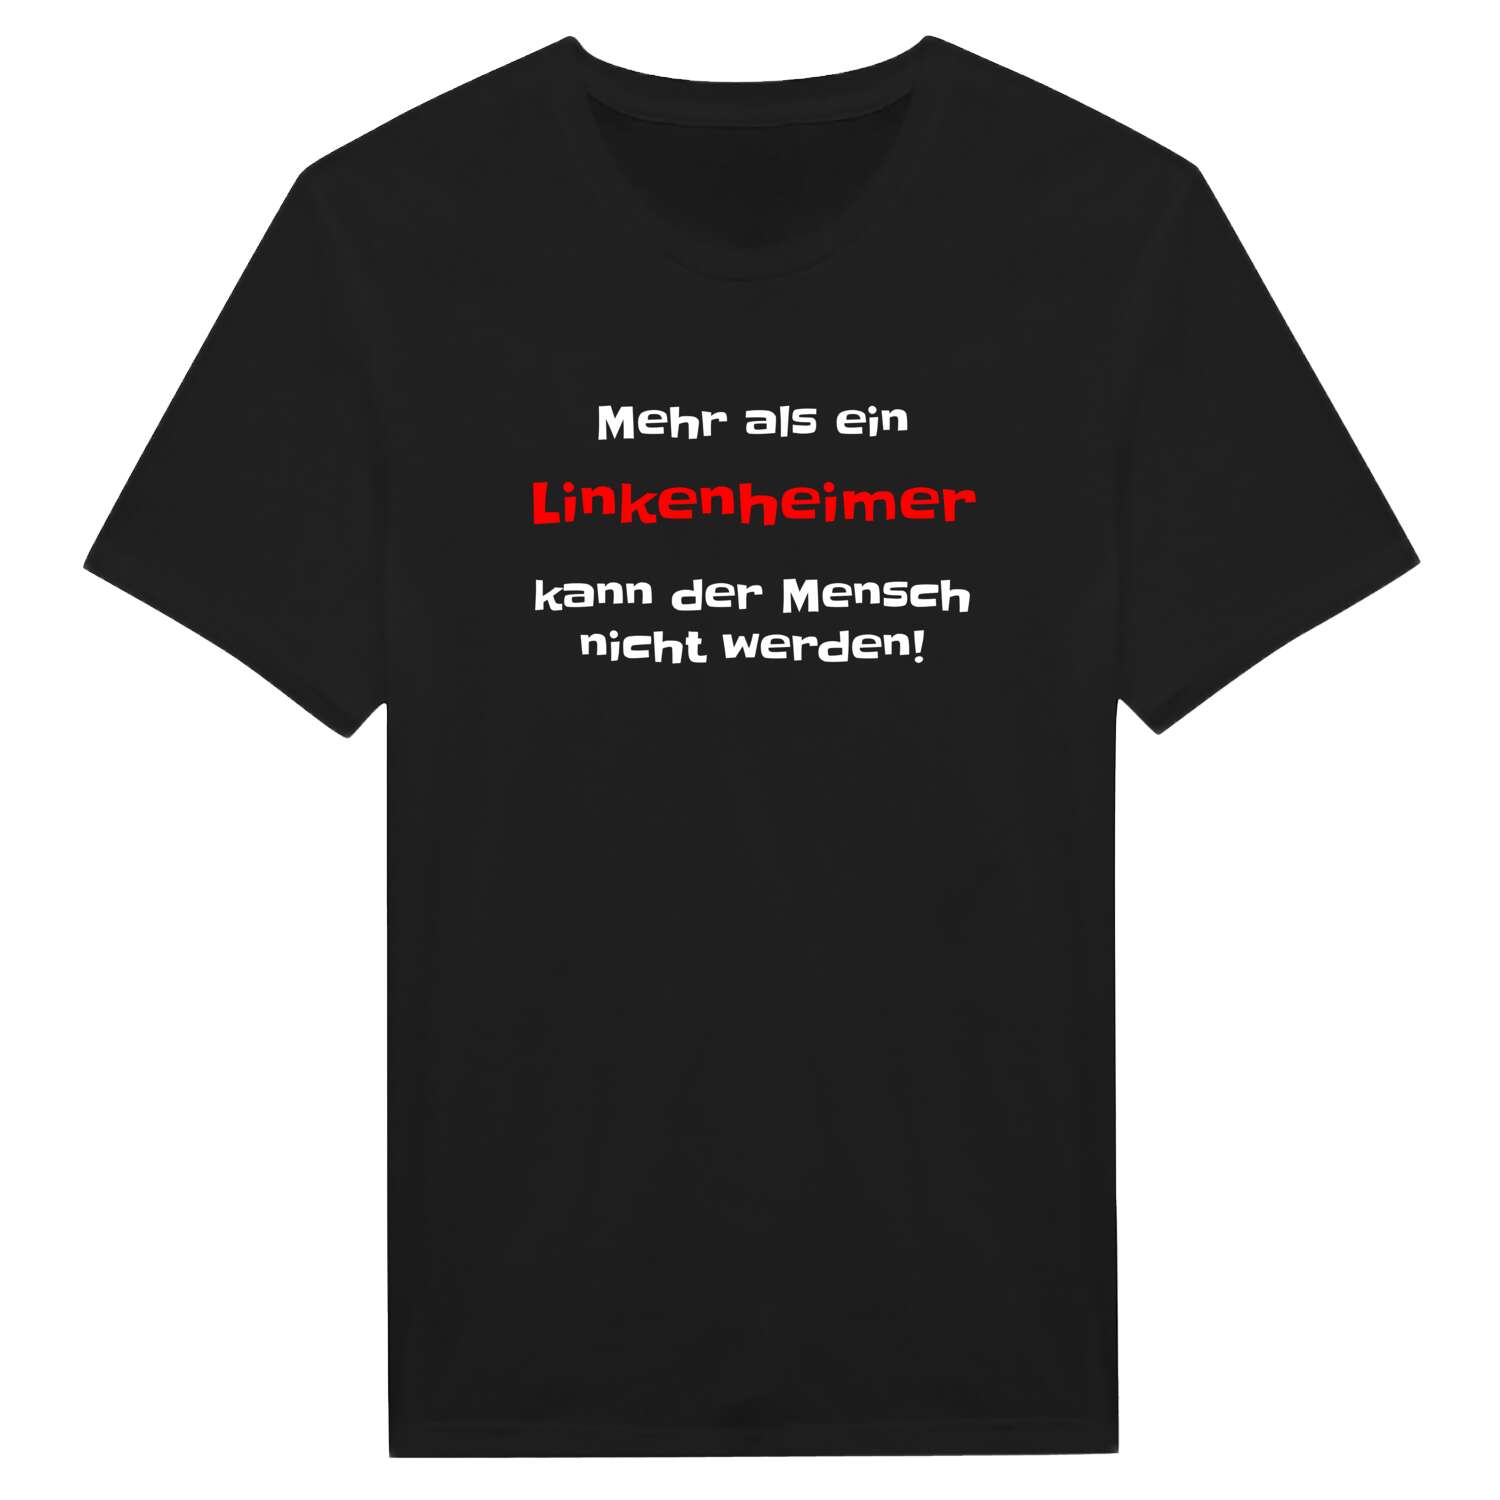 Linkenheim T-Shirt »Mehr als ein«